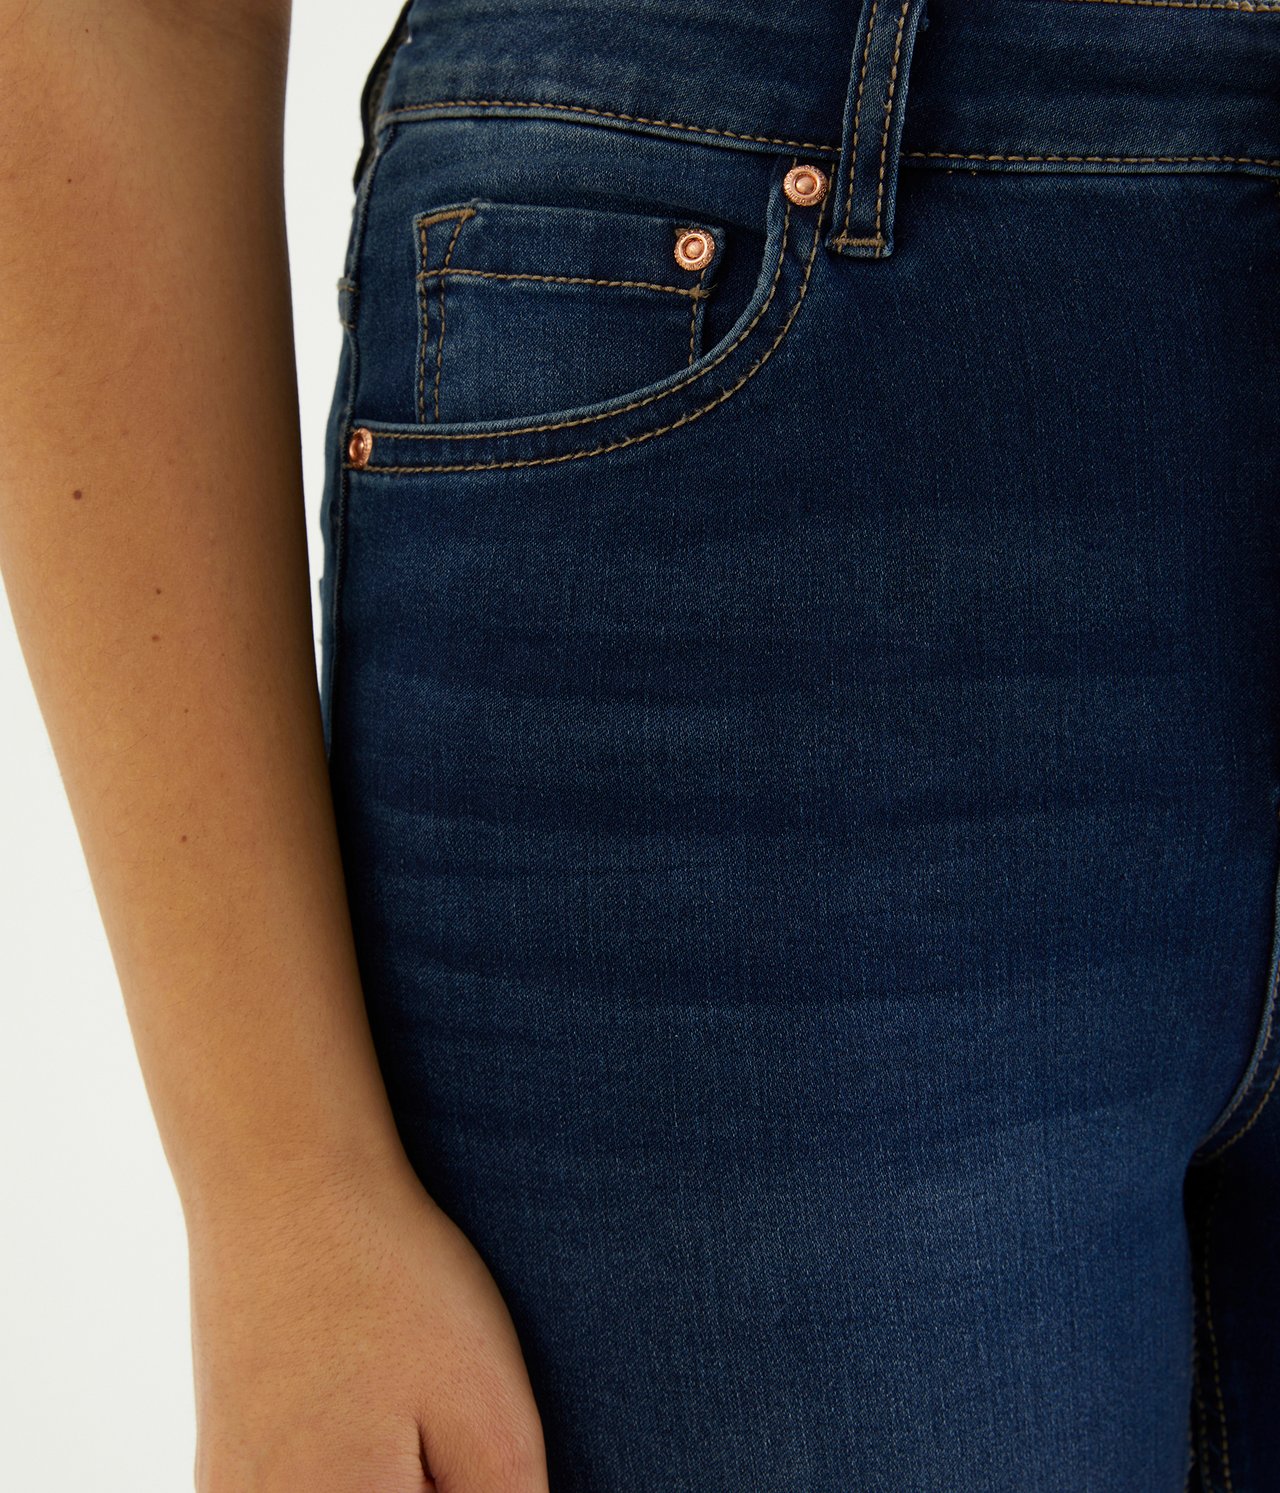 Super Slim Jeans High Waist - Mörk denim - 174cm / Storlek: 38 - 2